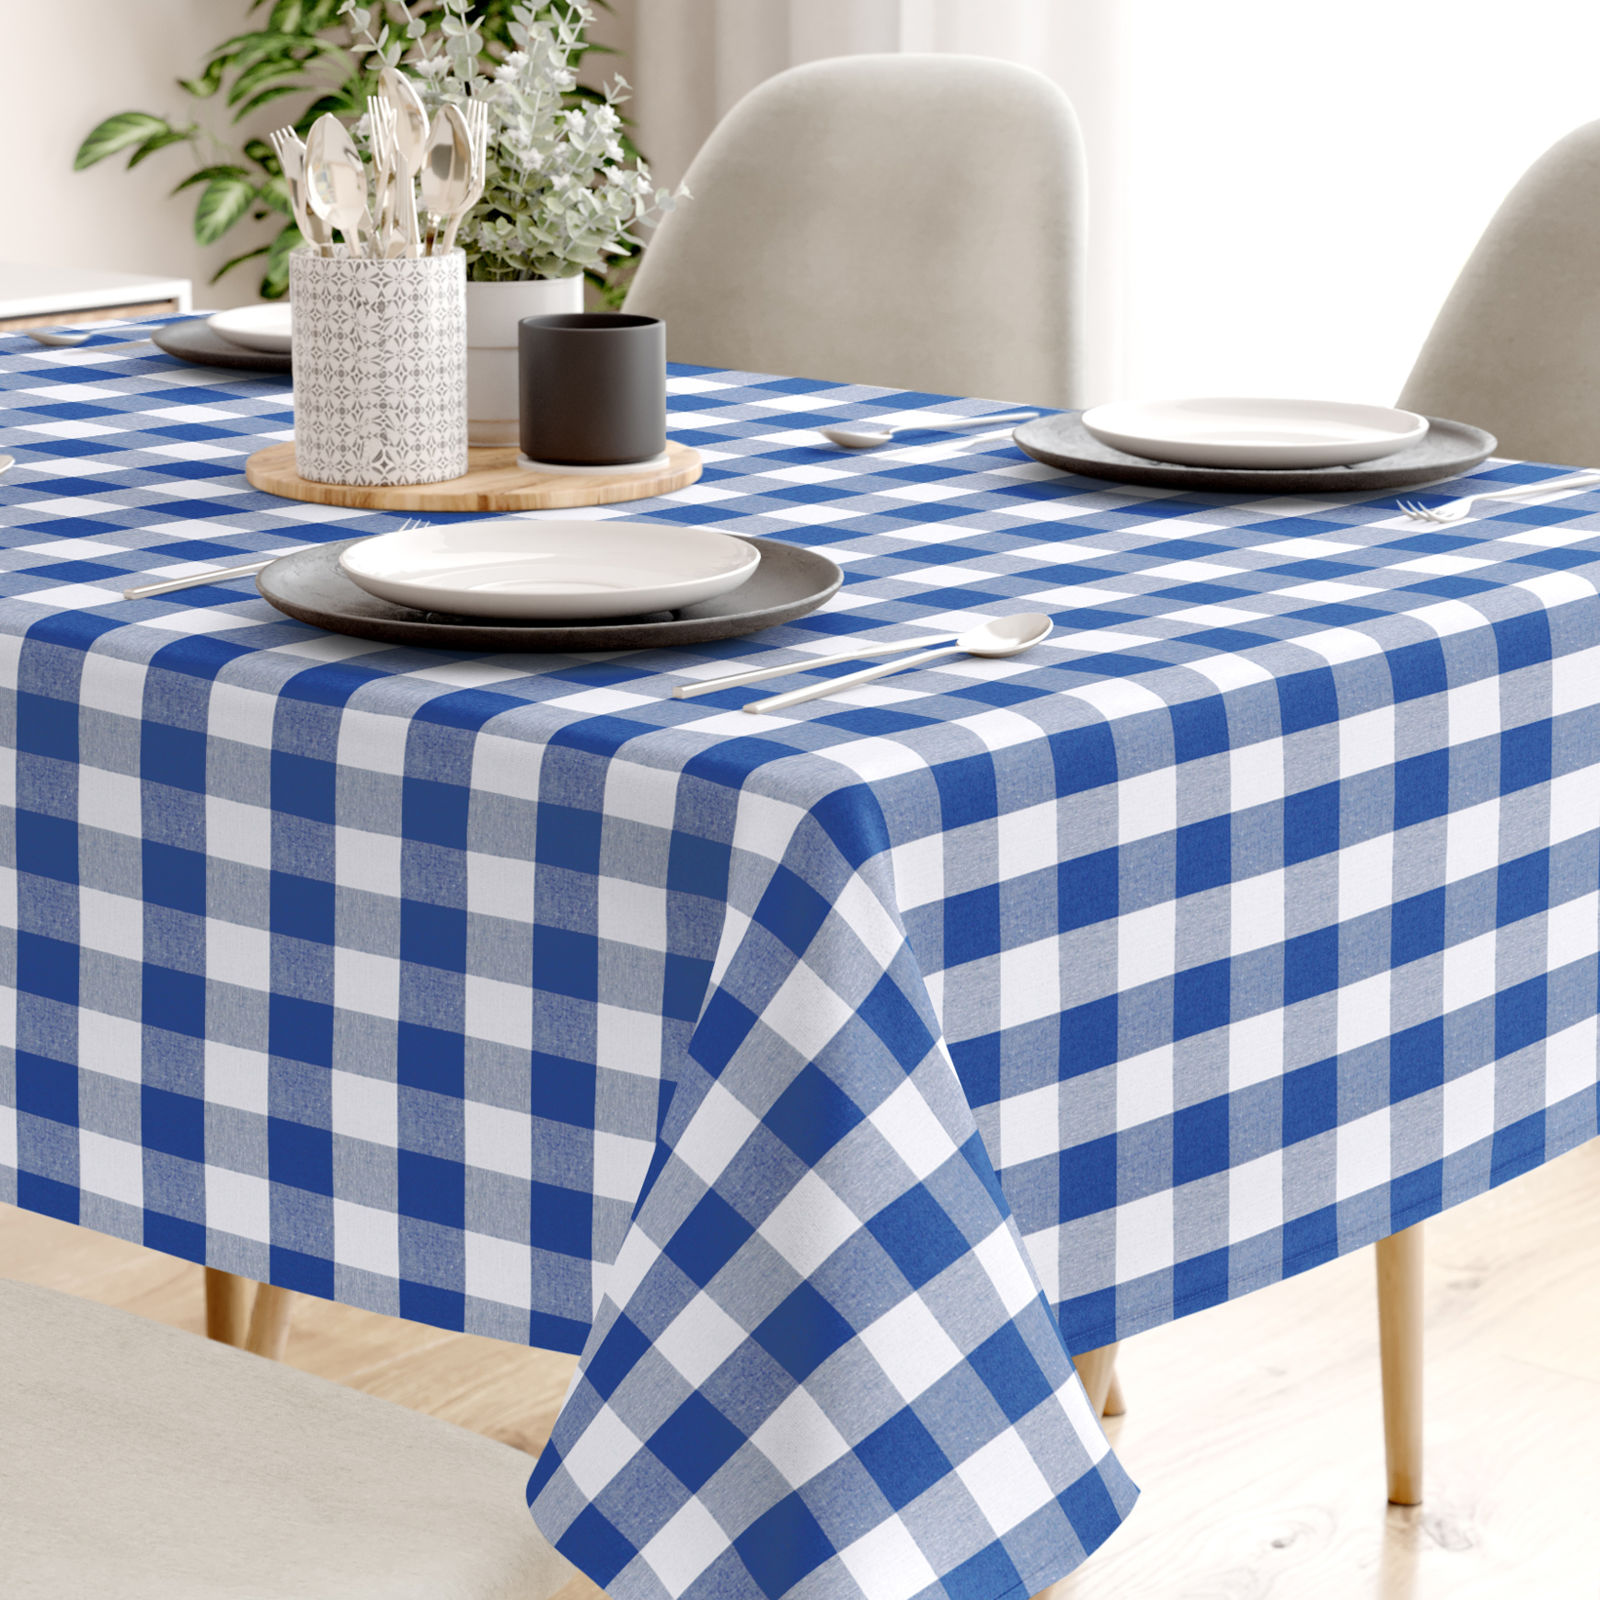 Față de masă decorativă MENORCA - carouri mari albastre și albe